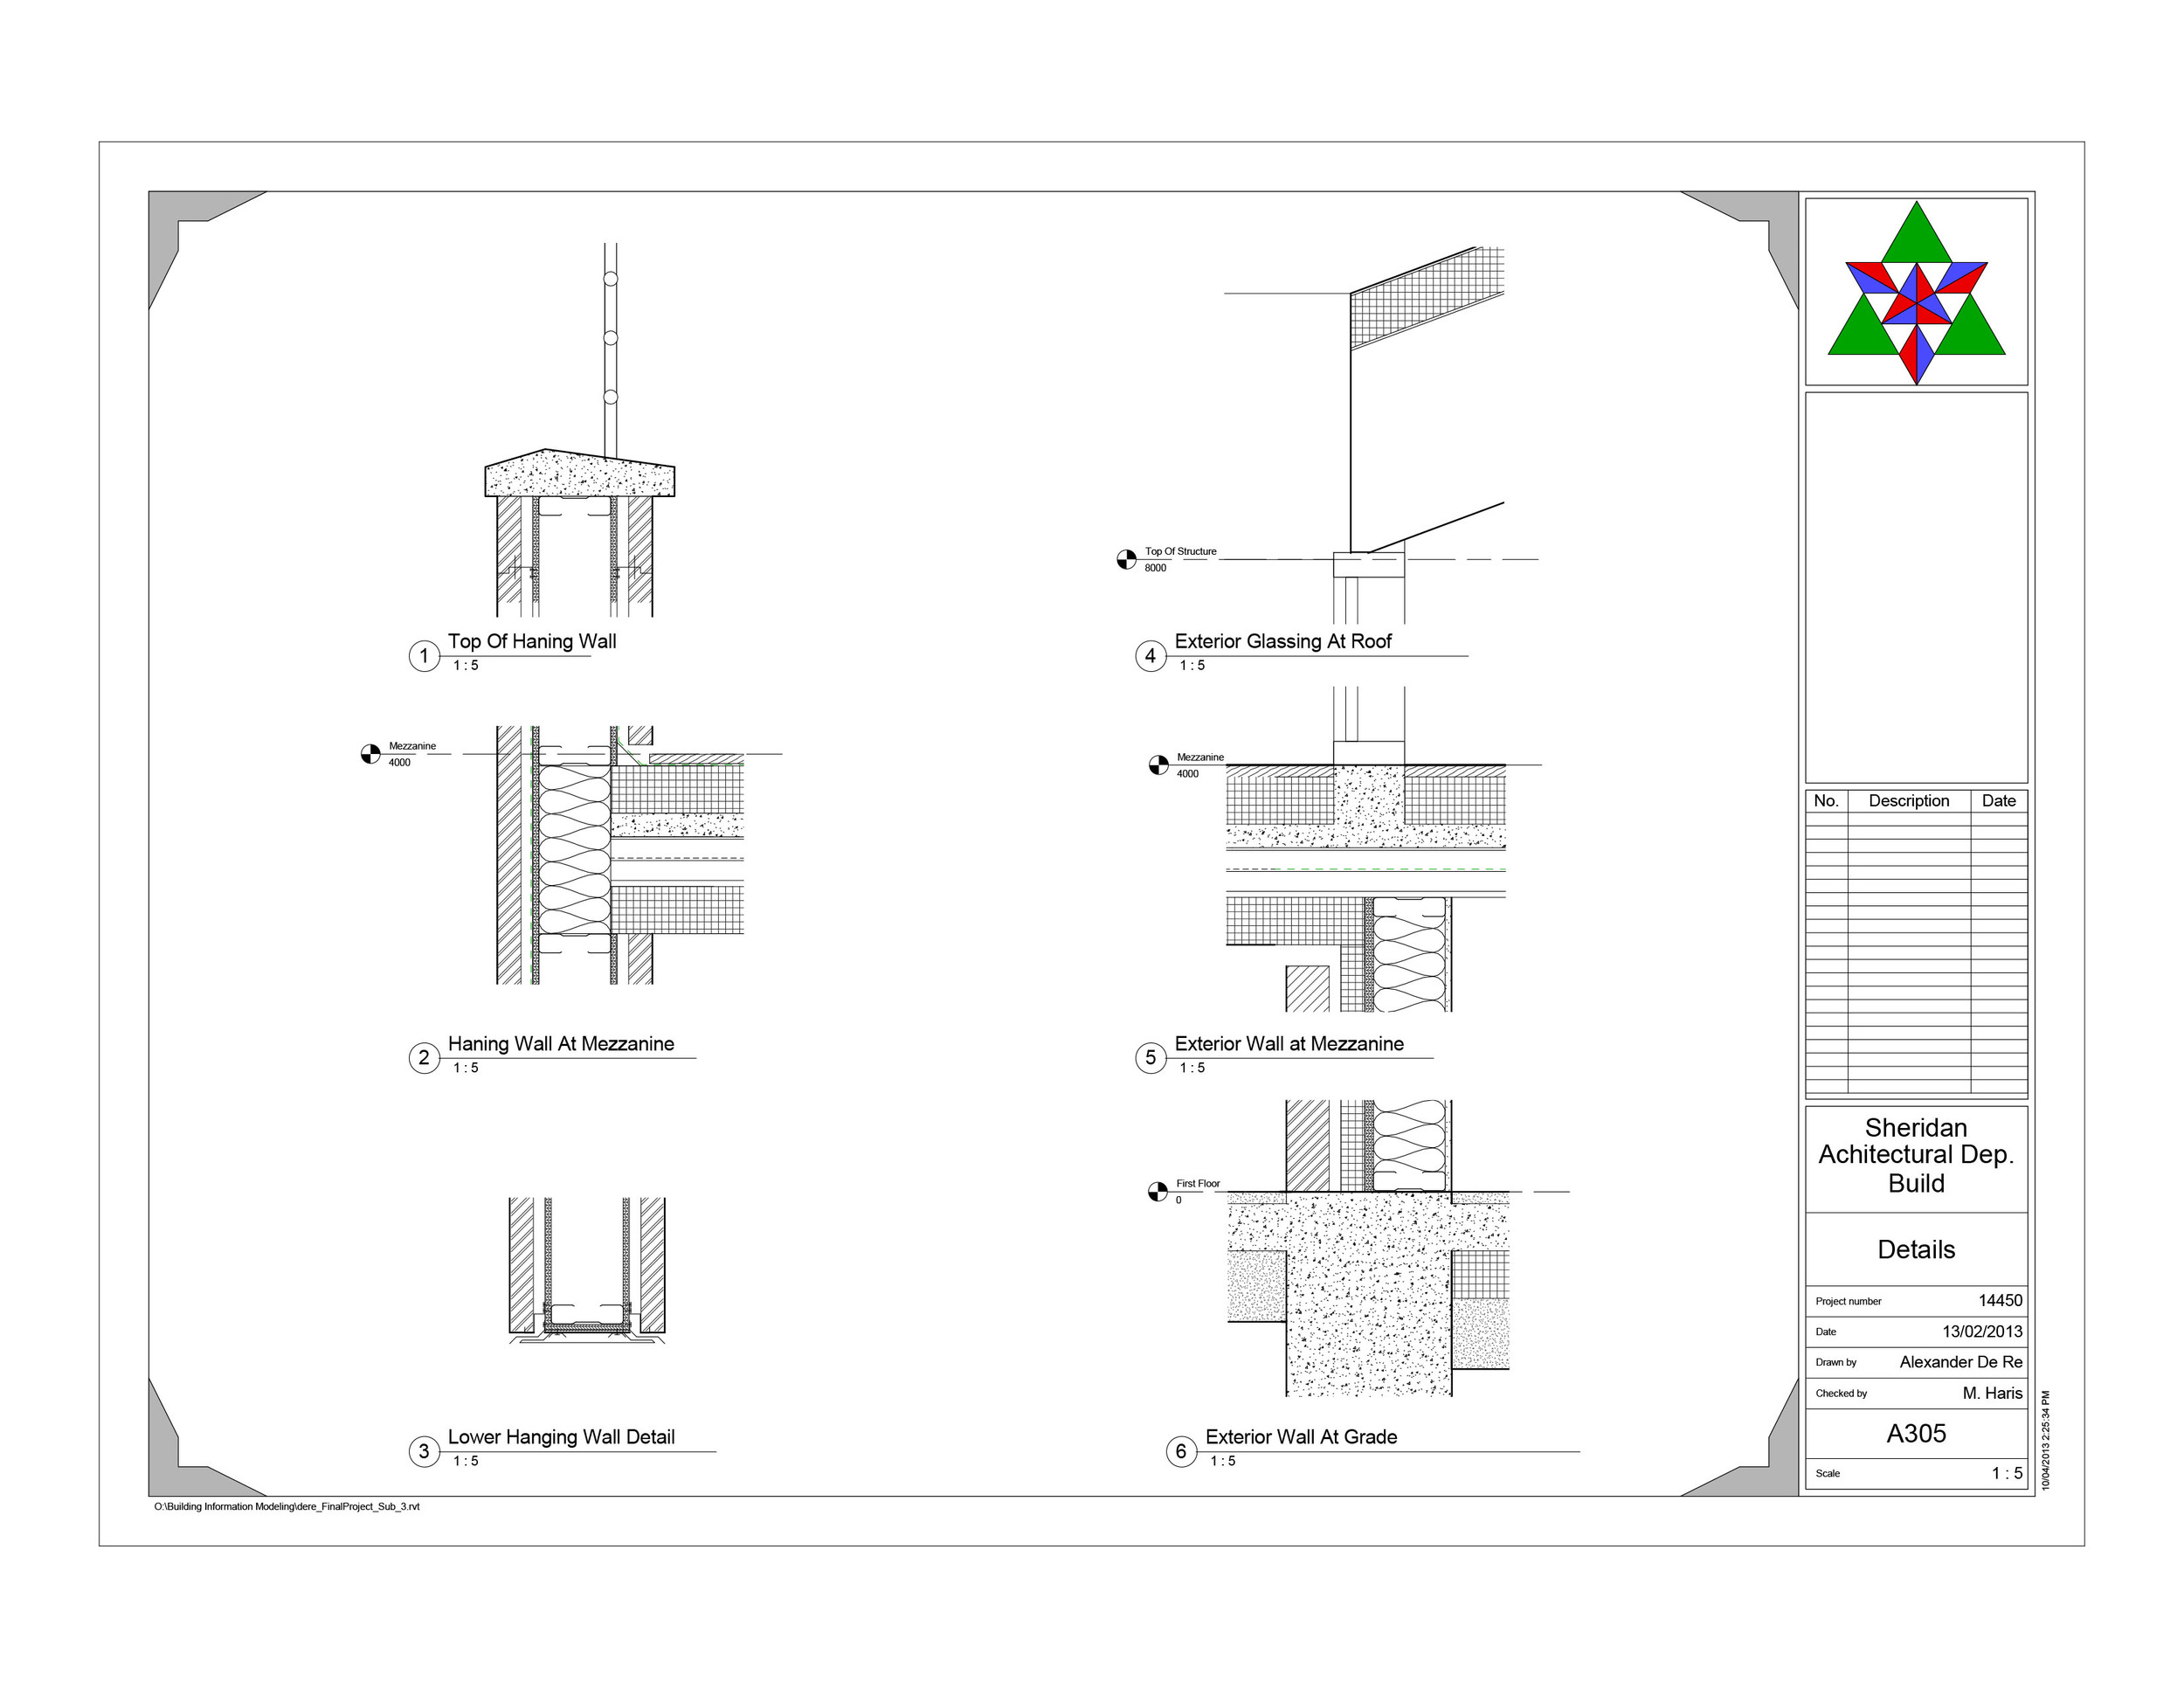 dere_FinalProject  - Sheet - A305 - Details.jpg